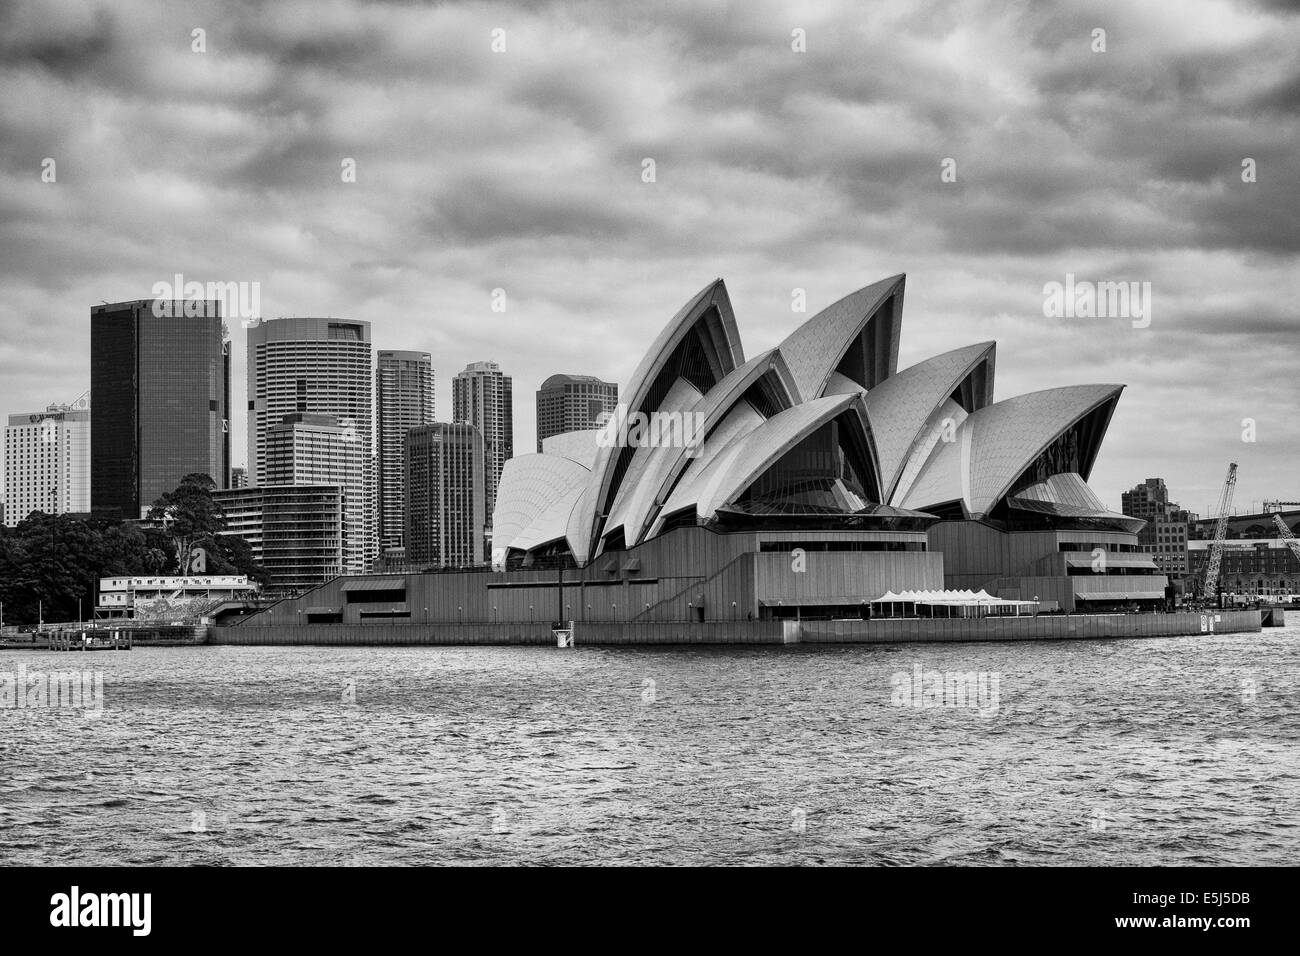 Sydney Opera House su Bennelong Point, presi a bordo del traghetto Manly sul Porto di Sydney, Australia. Fotografia in bianco e nero. Luglio 2014 Foto Stock